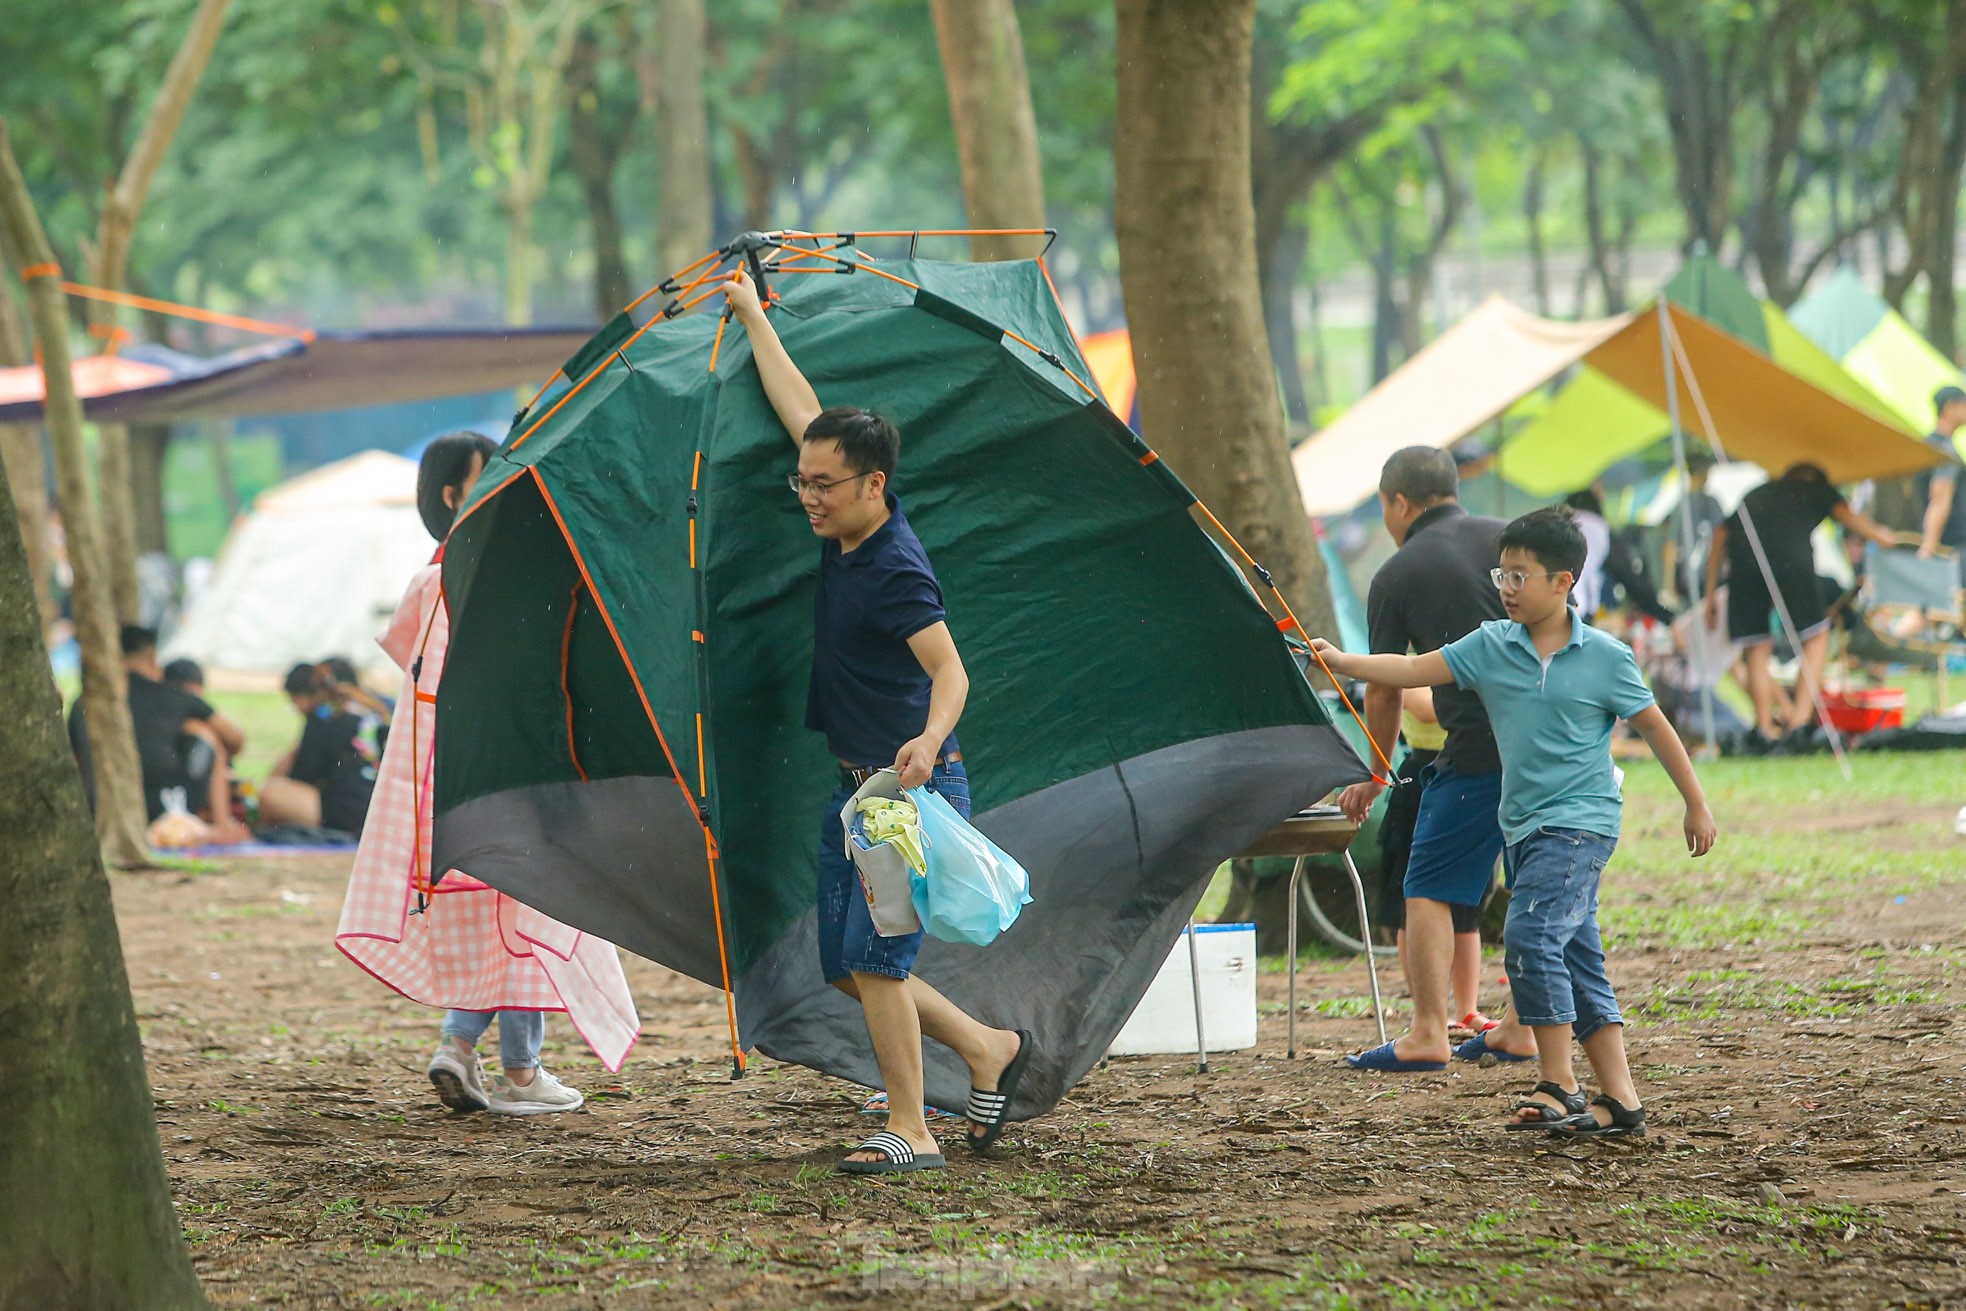 Hàng nghìn người đổ về công viên Yên Sở cắm trại trong ngày nghỉ lễ - Ảnh 5.